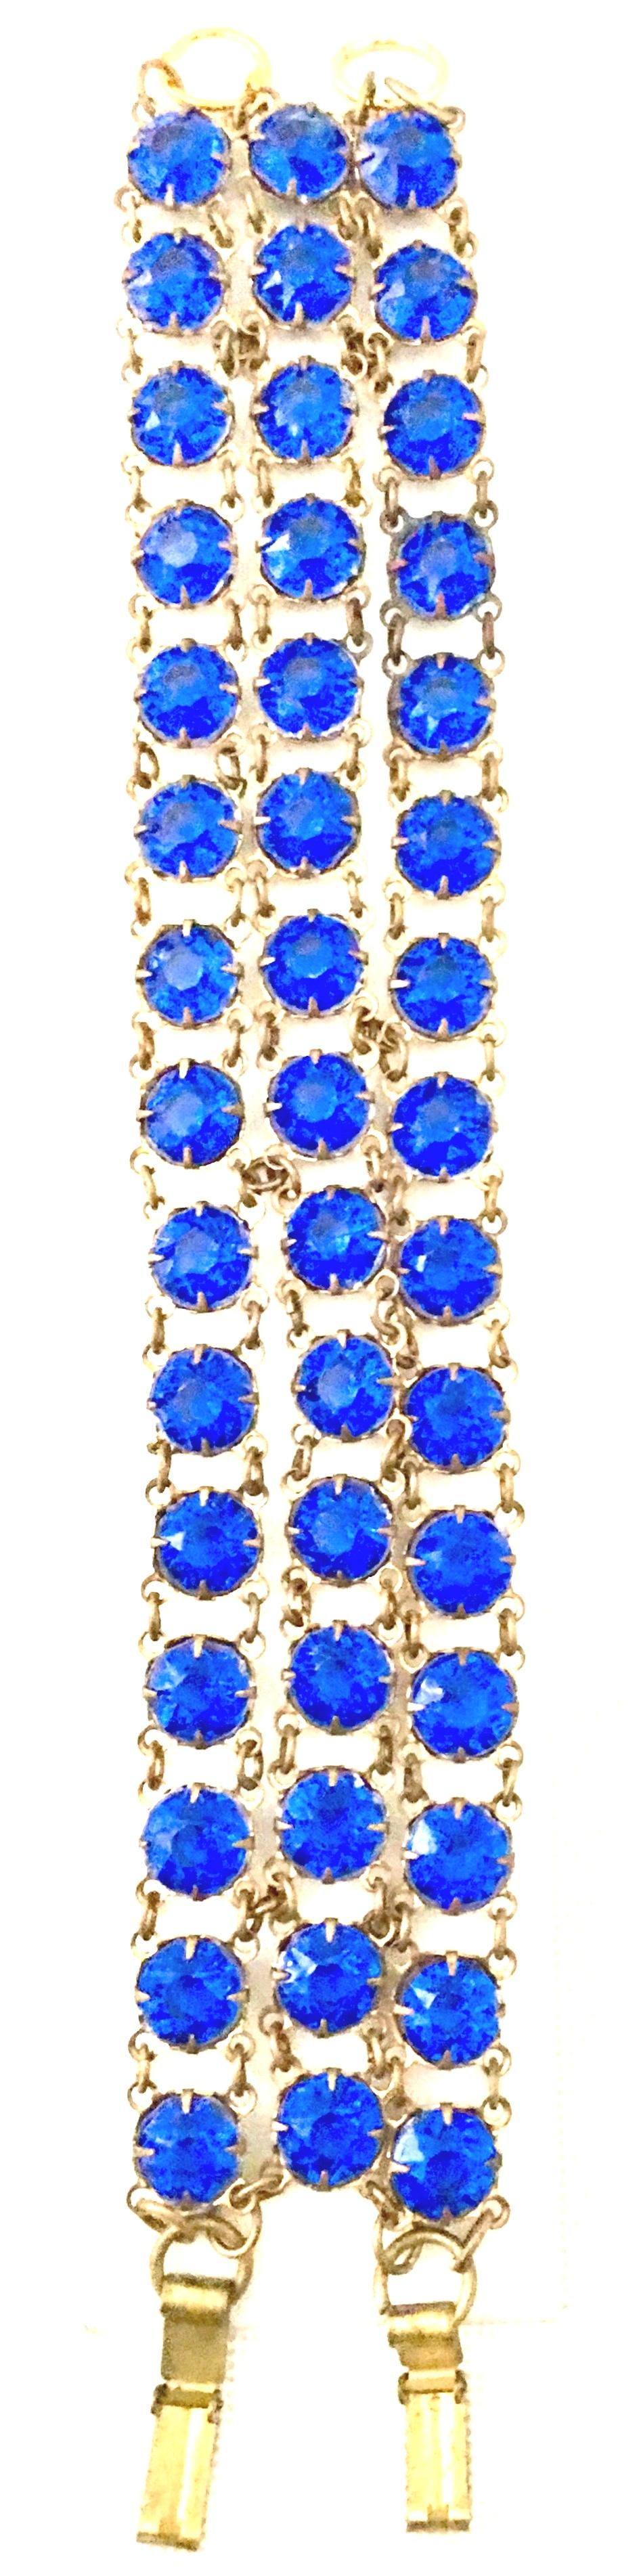 Antique Gilt Gold Sapphire Blue Faceted Glass Choker Necklace & Bracelet S/2 For Sale 5